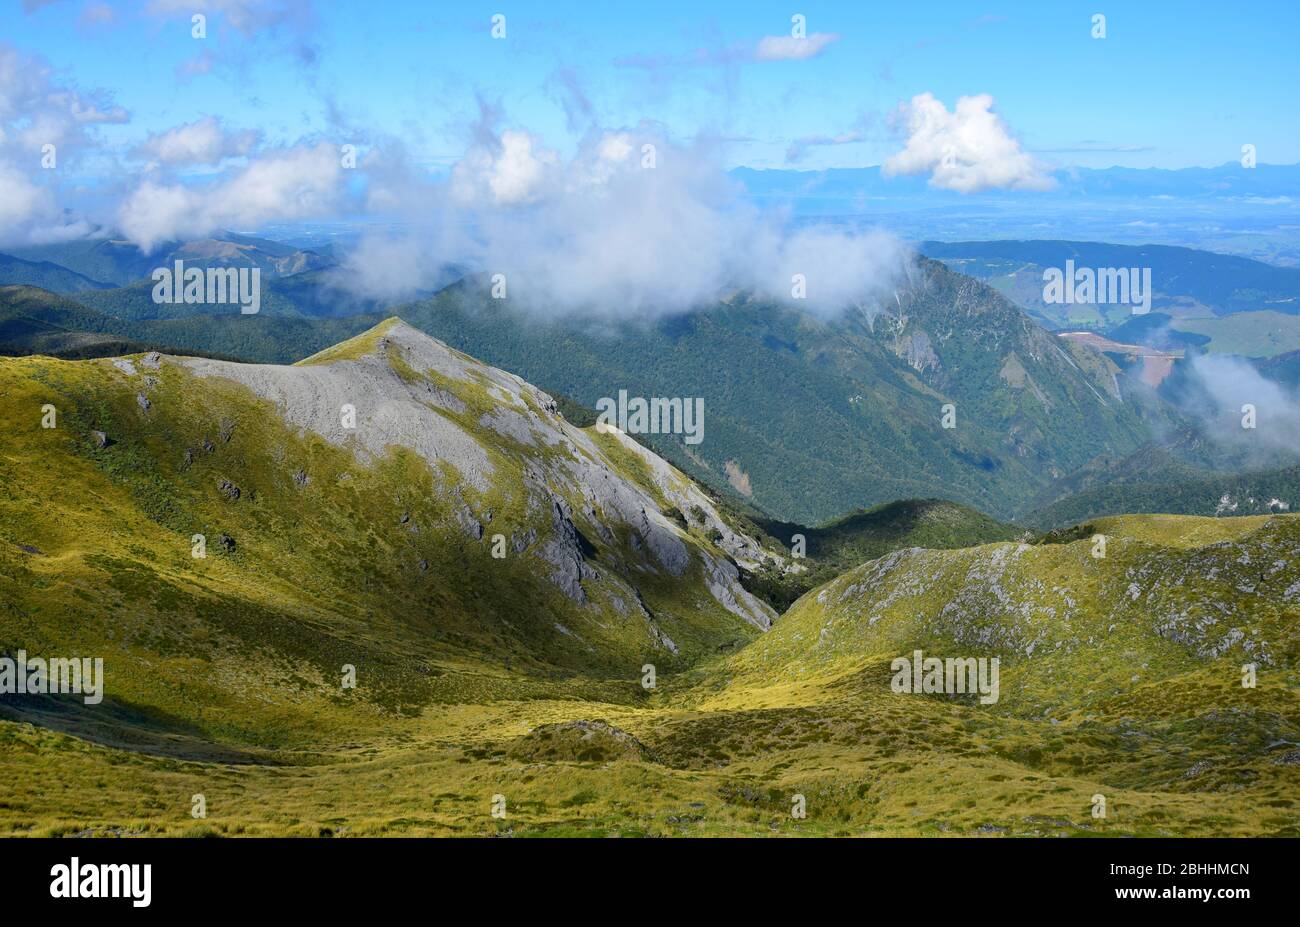 Beautiful mountain landscape. Mount Arthur Range, Kahurangi National Park, New Zealand, South Island. Stock Photo